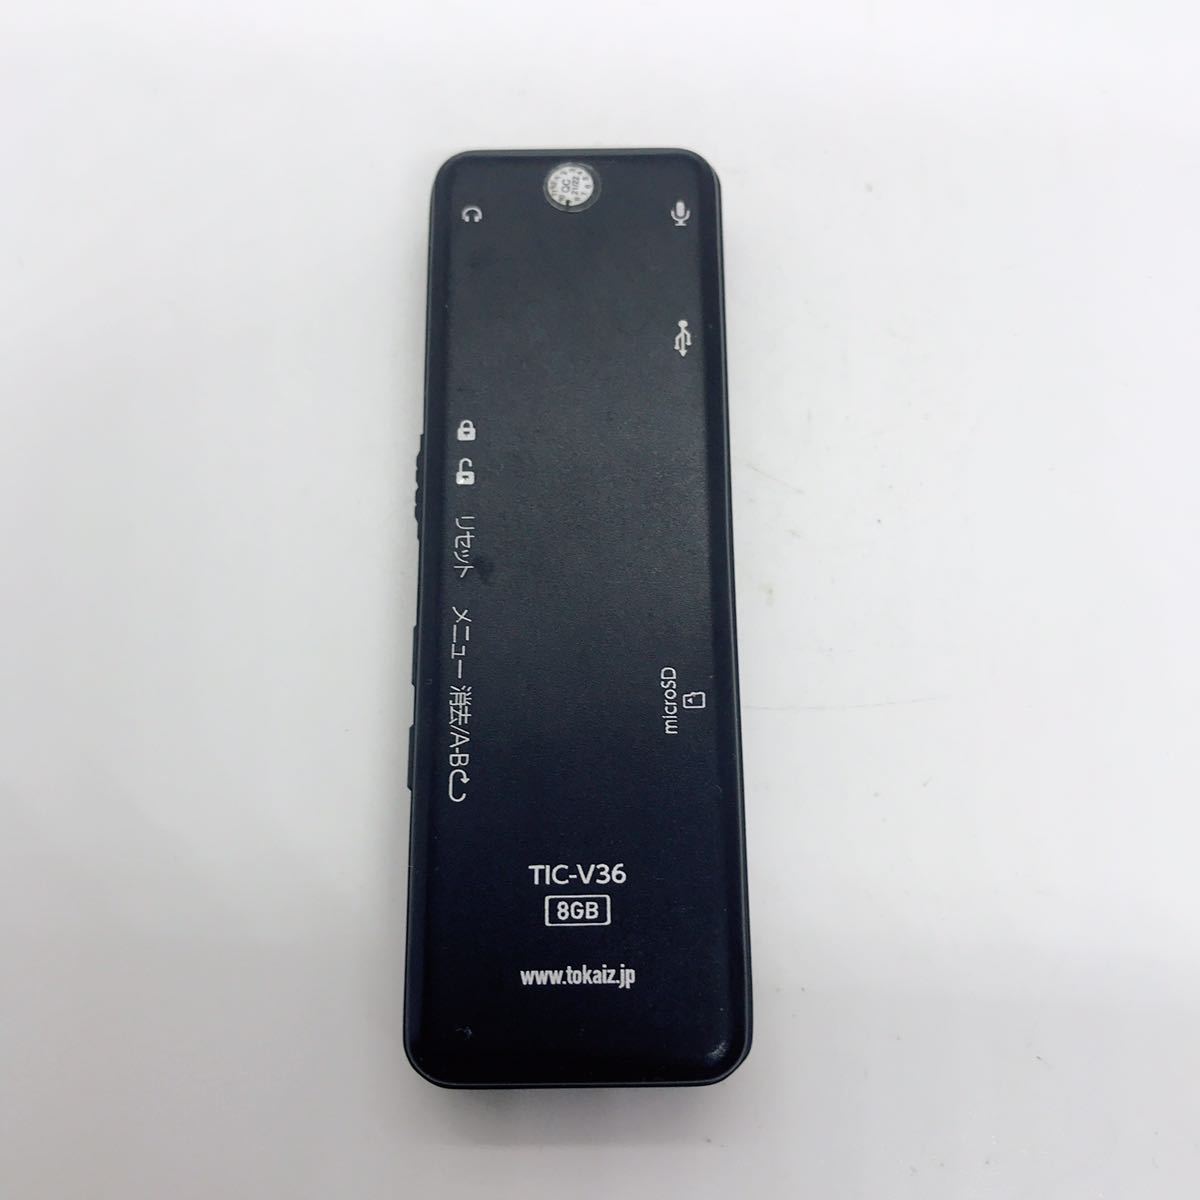 TOKAIZ ボイスレコーダー ICレコーダー TIC-V36 充電式 a2h2cy_画像4